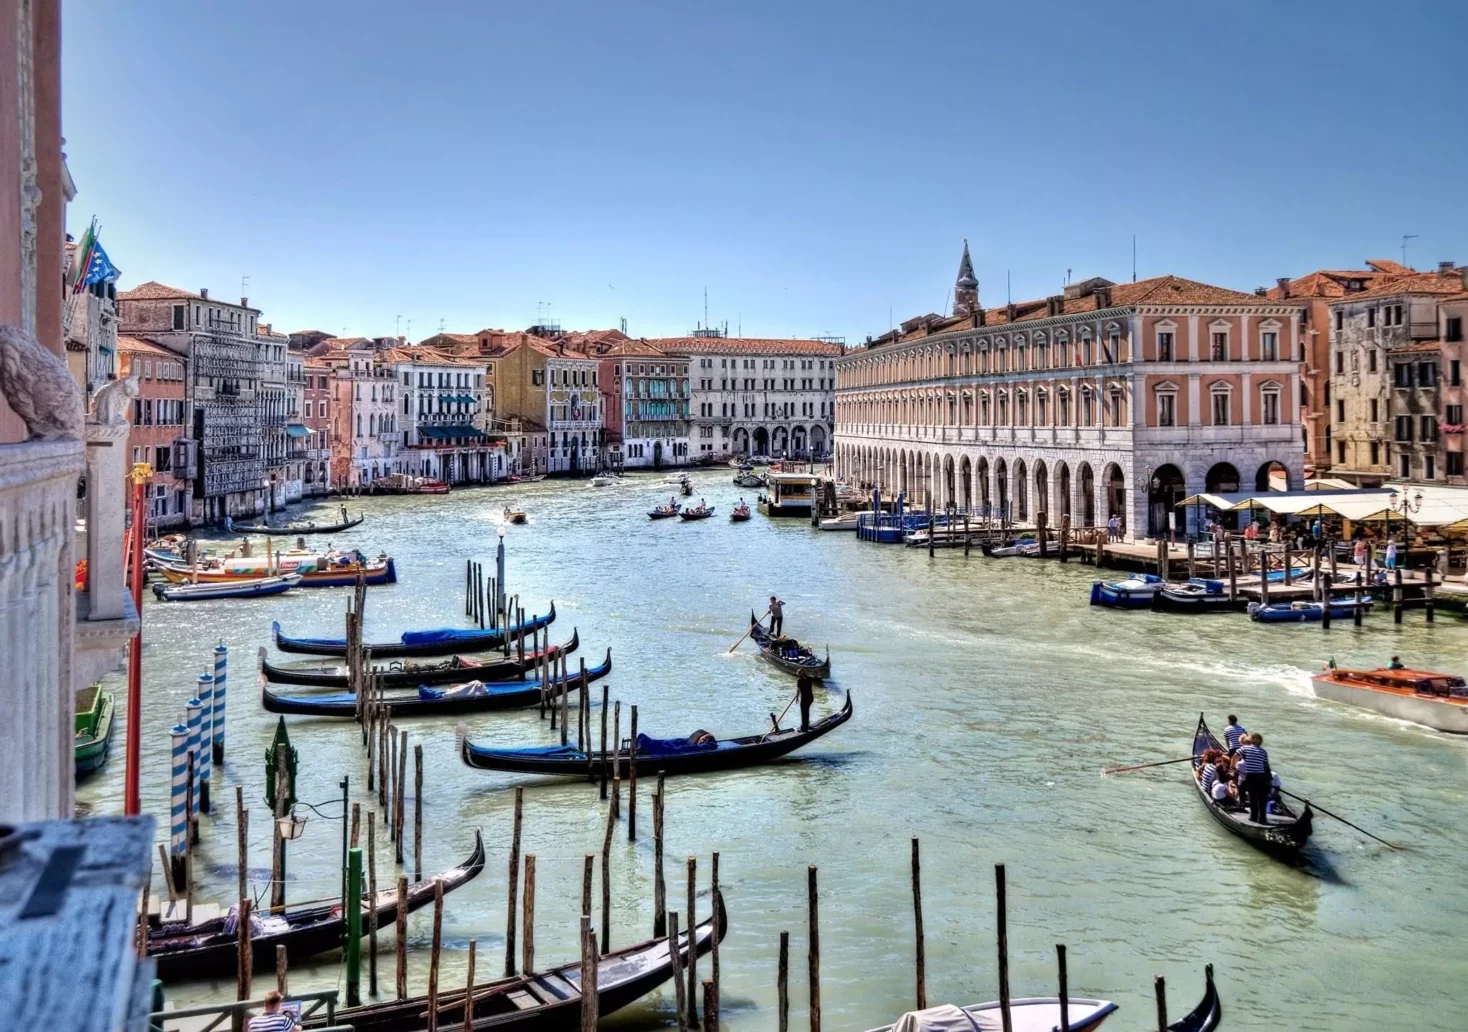 Bild auf 5min.at zeigt die Kulisse von Venedig.